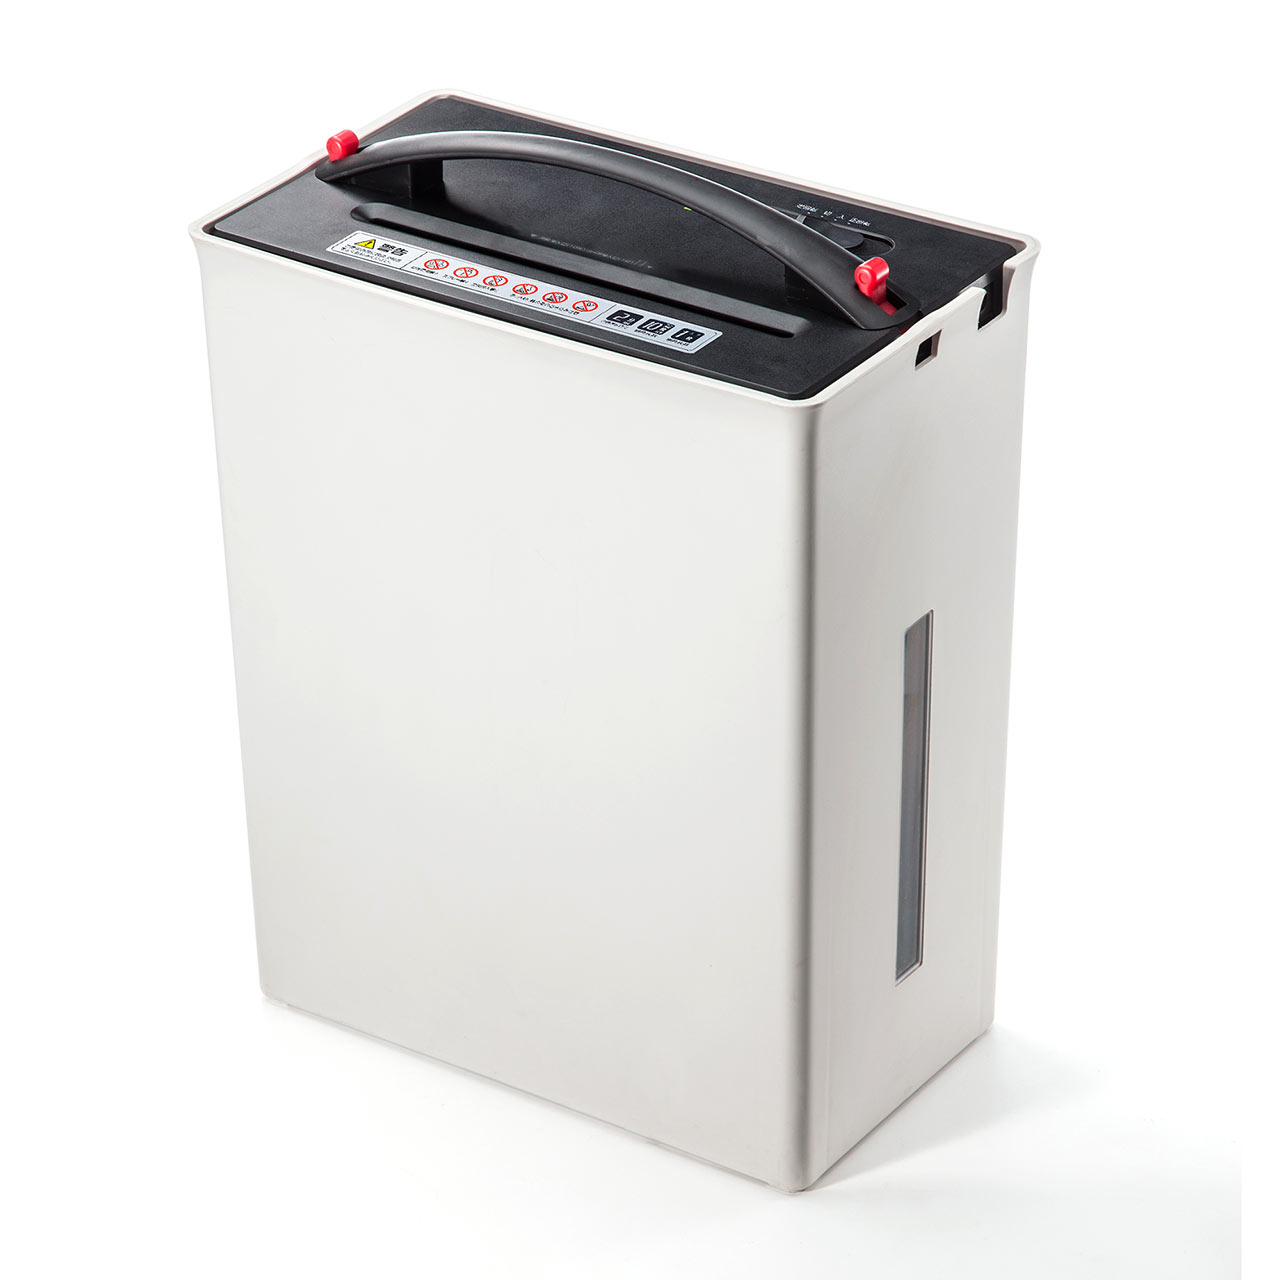 電動シュレッダー ゴミ圧縮機能付き 家庭用 クロスカット 10枚細断 カード対応 小型 取っ手付き 21L 400-PSD024